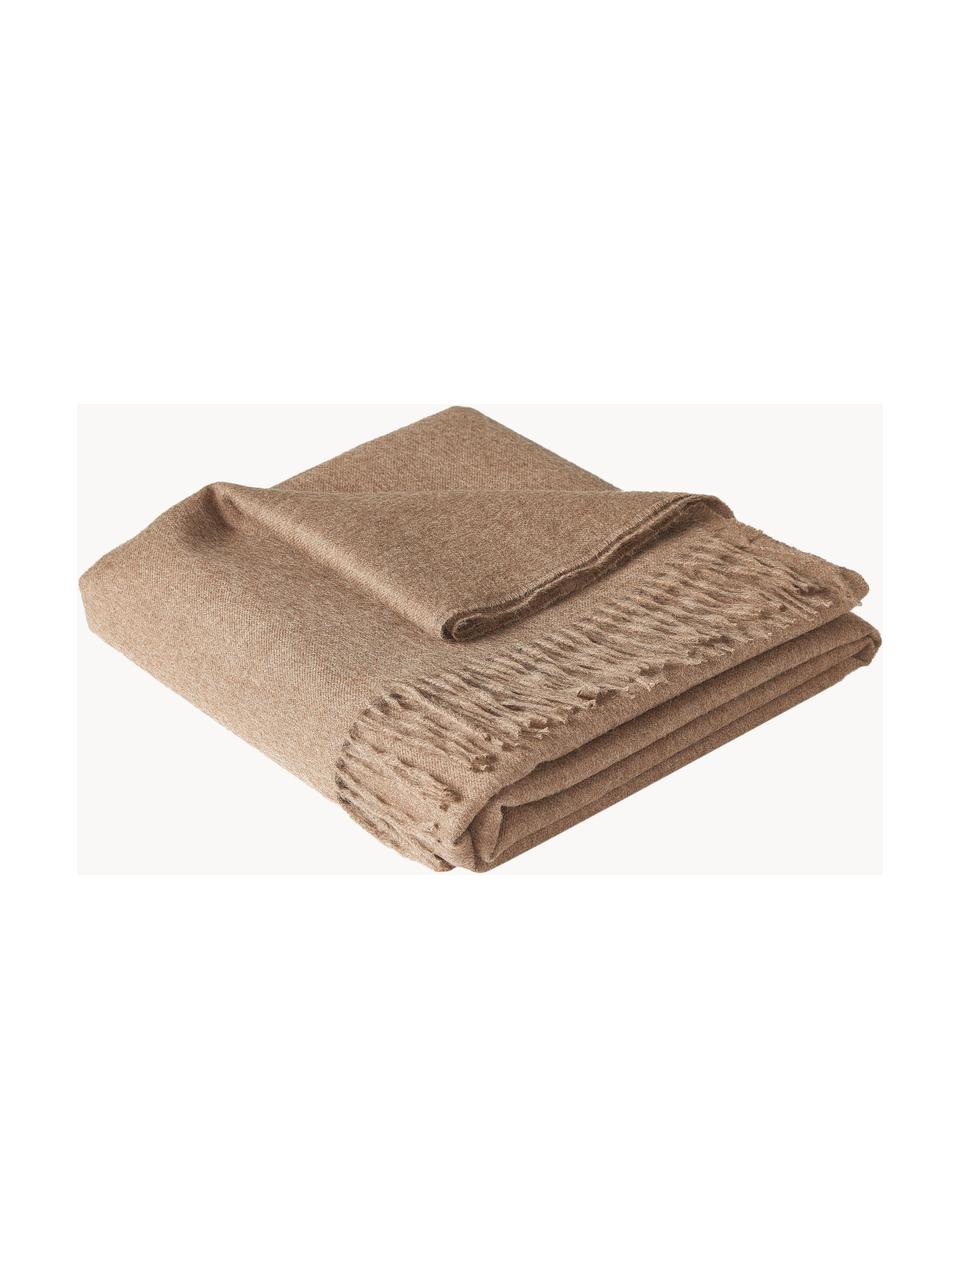 Decke Luxury aus Babyalpaka-Wolle, 100 % Babyalpaka-Wolle

Diese Decke ist aus wunderbar weicher, hochwertiger Babyalpaka-Wolle gewebt. Sie schmeichelt der Haut und spendet wohlige Wärme, ist strapazierfähig aber dennoch leicht und besitzt hervorragende temperaturregulierende Eigenschaften. Dadurch ist diese Decke der perfekte Begleiter für kühle Sommerabende ebenso wie kalte Wintertage., Nougat, B 130 x L 200 cm